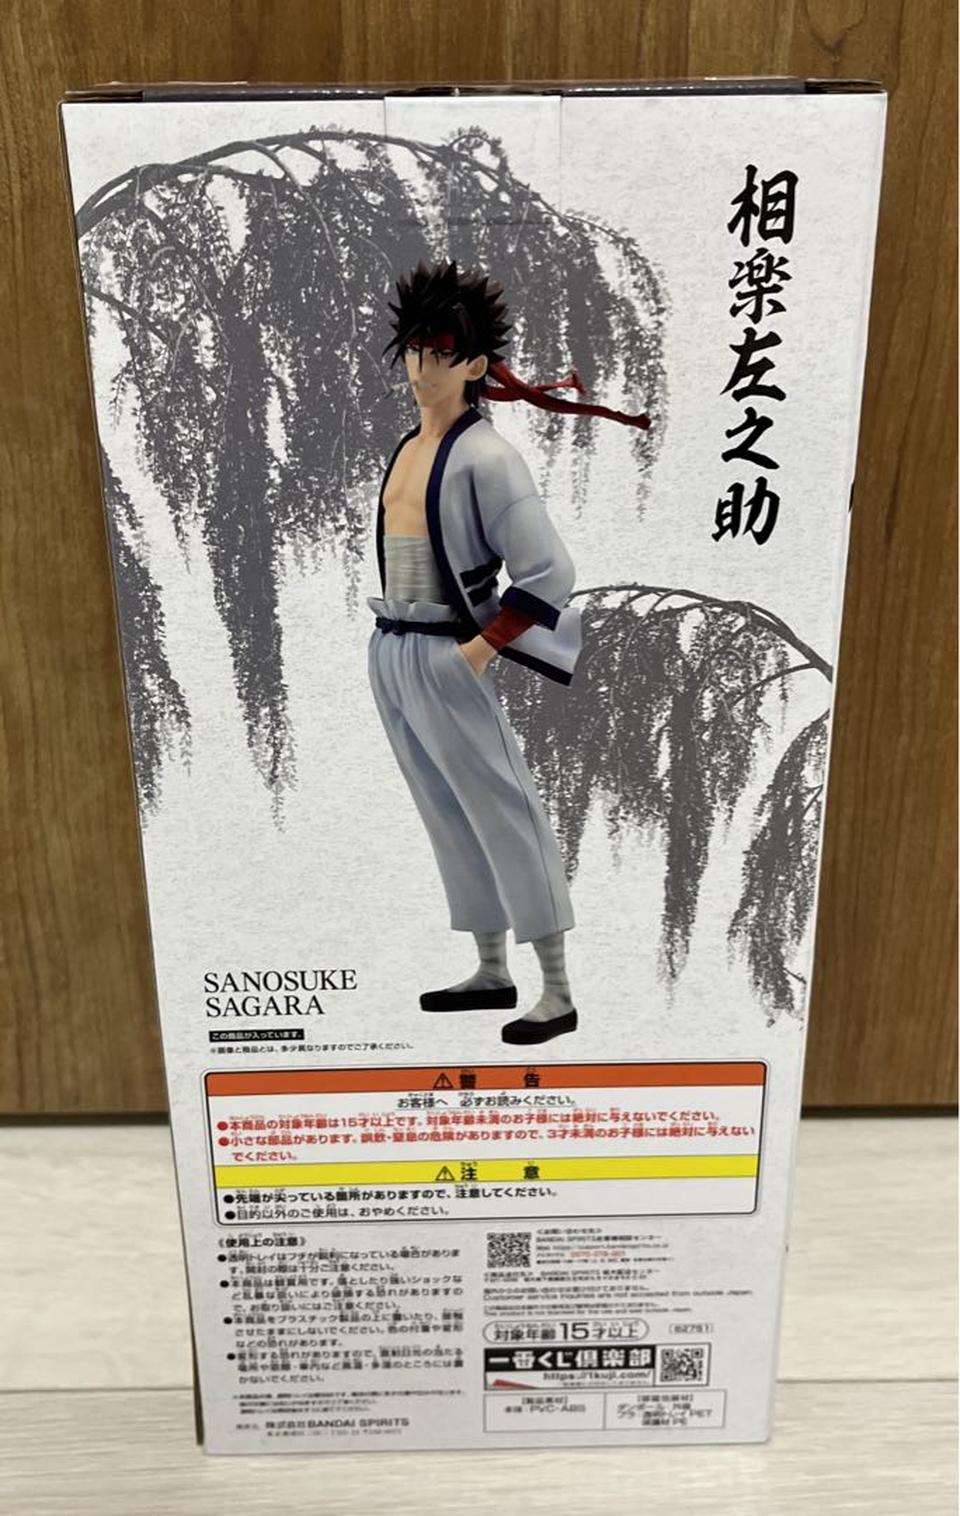 Sagara Sanosuke Figure Ichiban Kuji Rurouni Kenshin B Prize for Sale